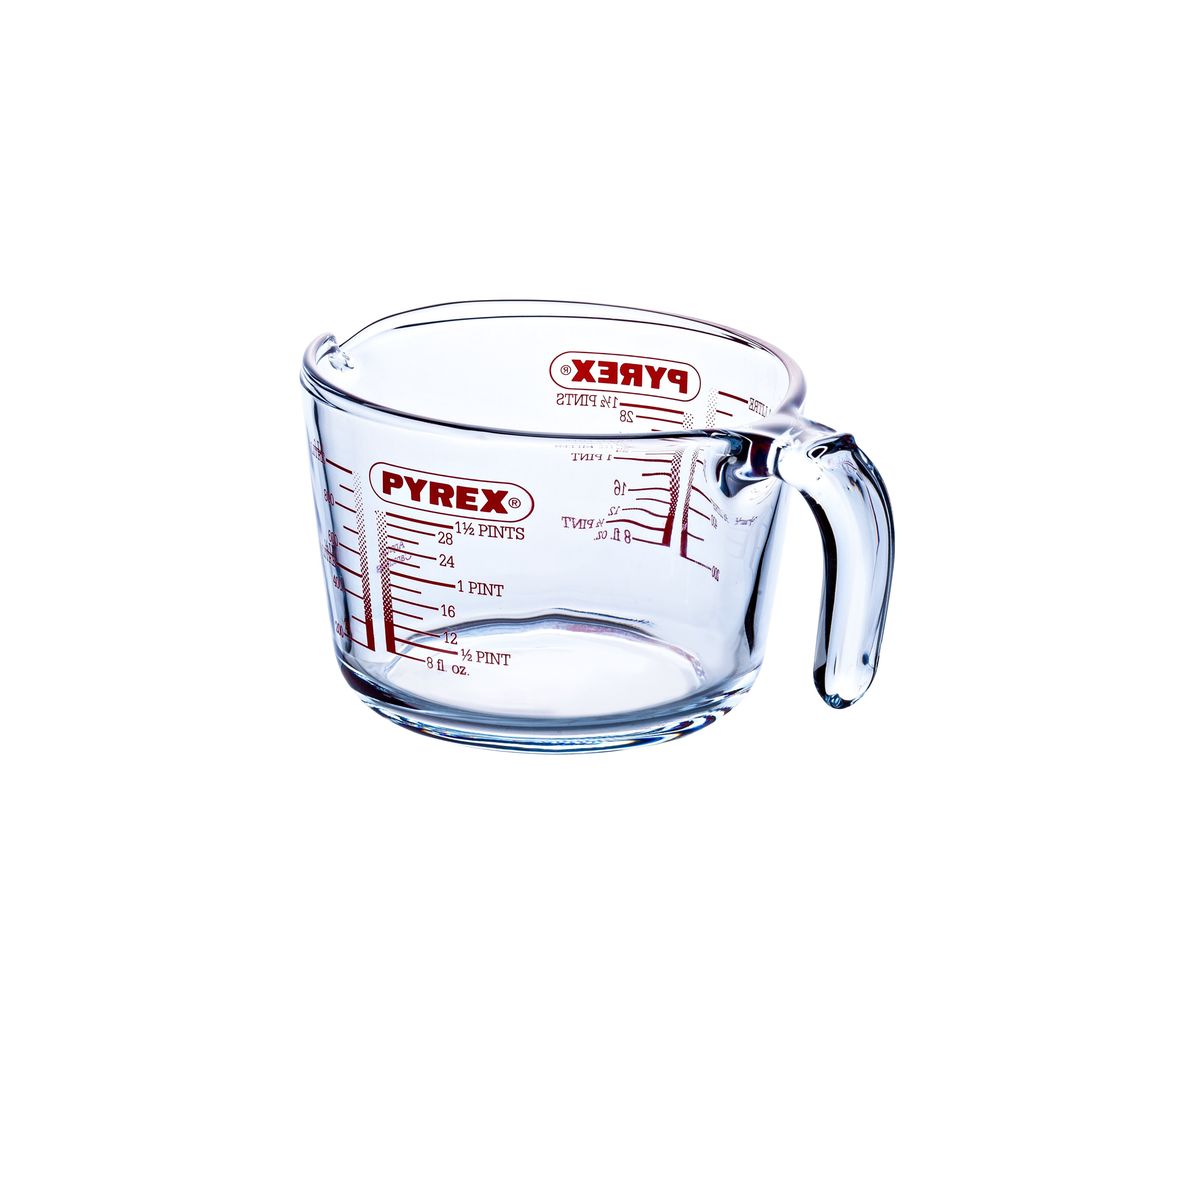 Broc mesureur Pyrex ®1 L avec couvercle, Classic - Ustensile de cuisine -  Achat & prix